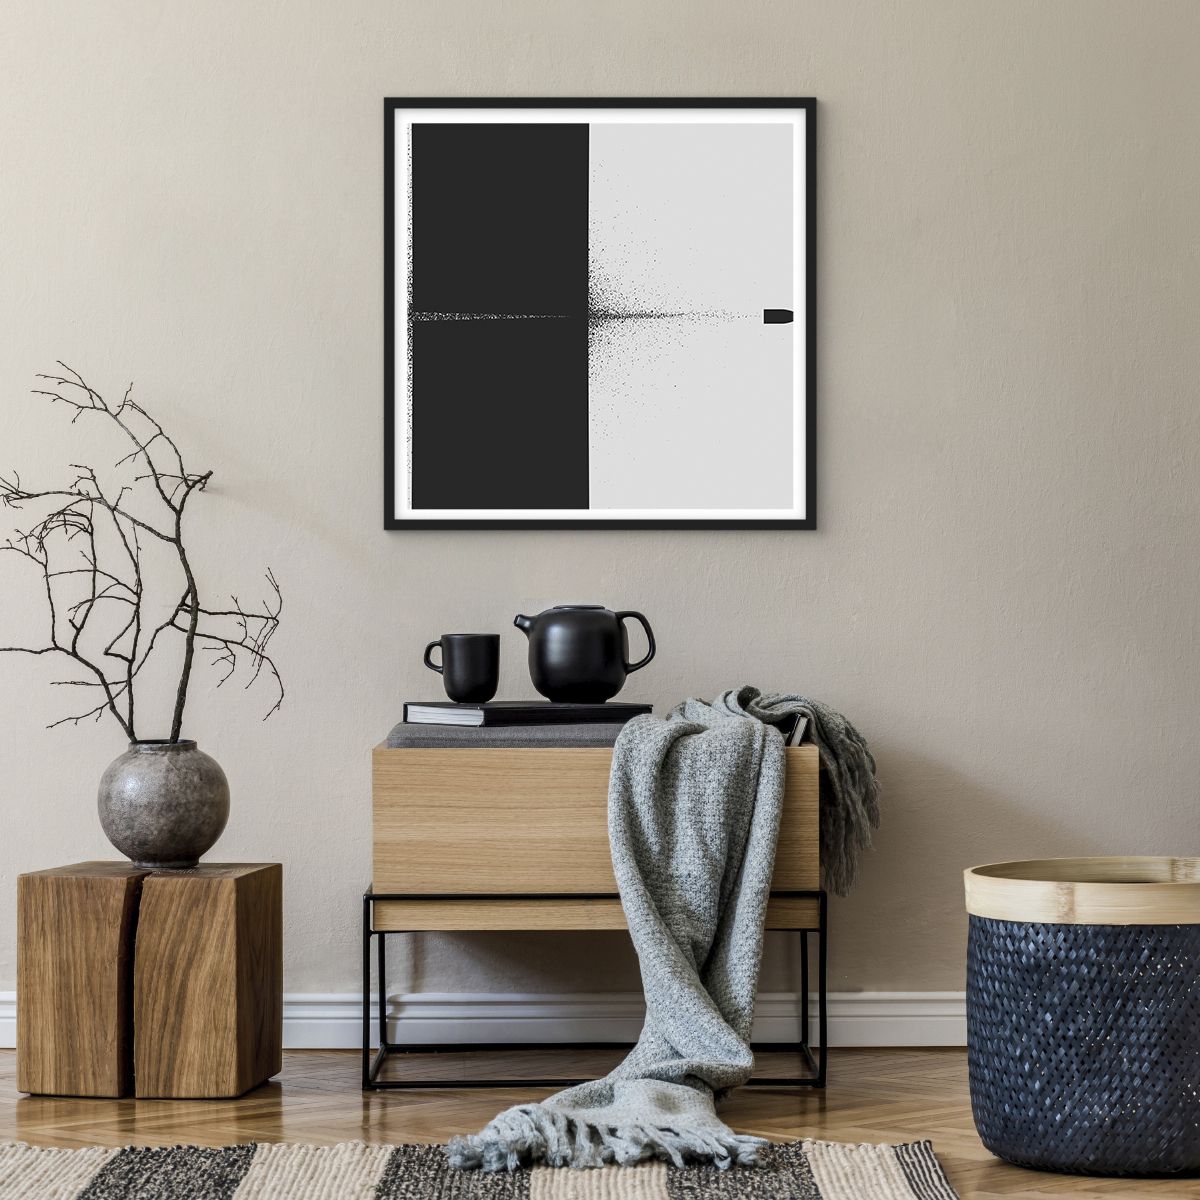 Affiche dans un cadre noir Balle, Affiche dans un cadre noir Noir Et Blanc, Affiche dans un cadre noir Abstraction, Affiche dans un cadre noir Art, Affiche dans un cadre noir Art Moderne